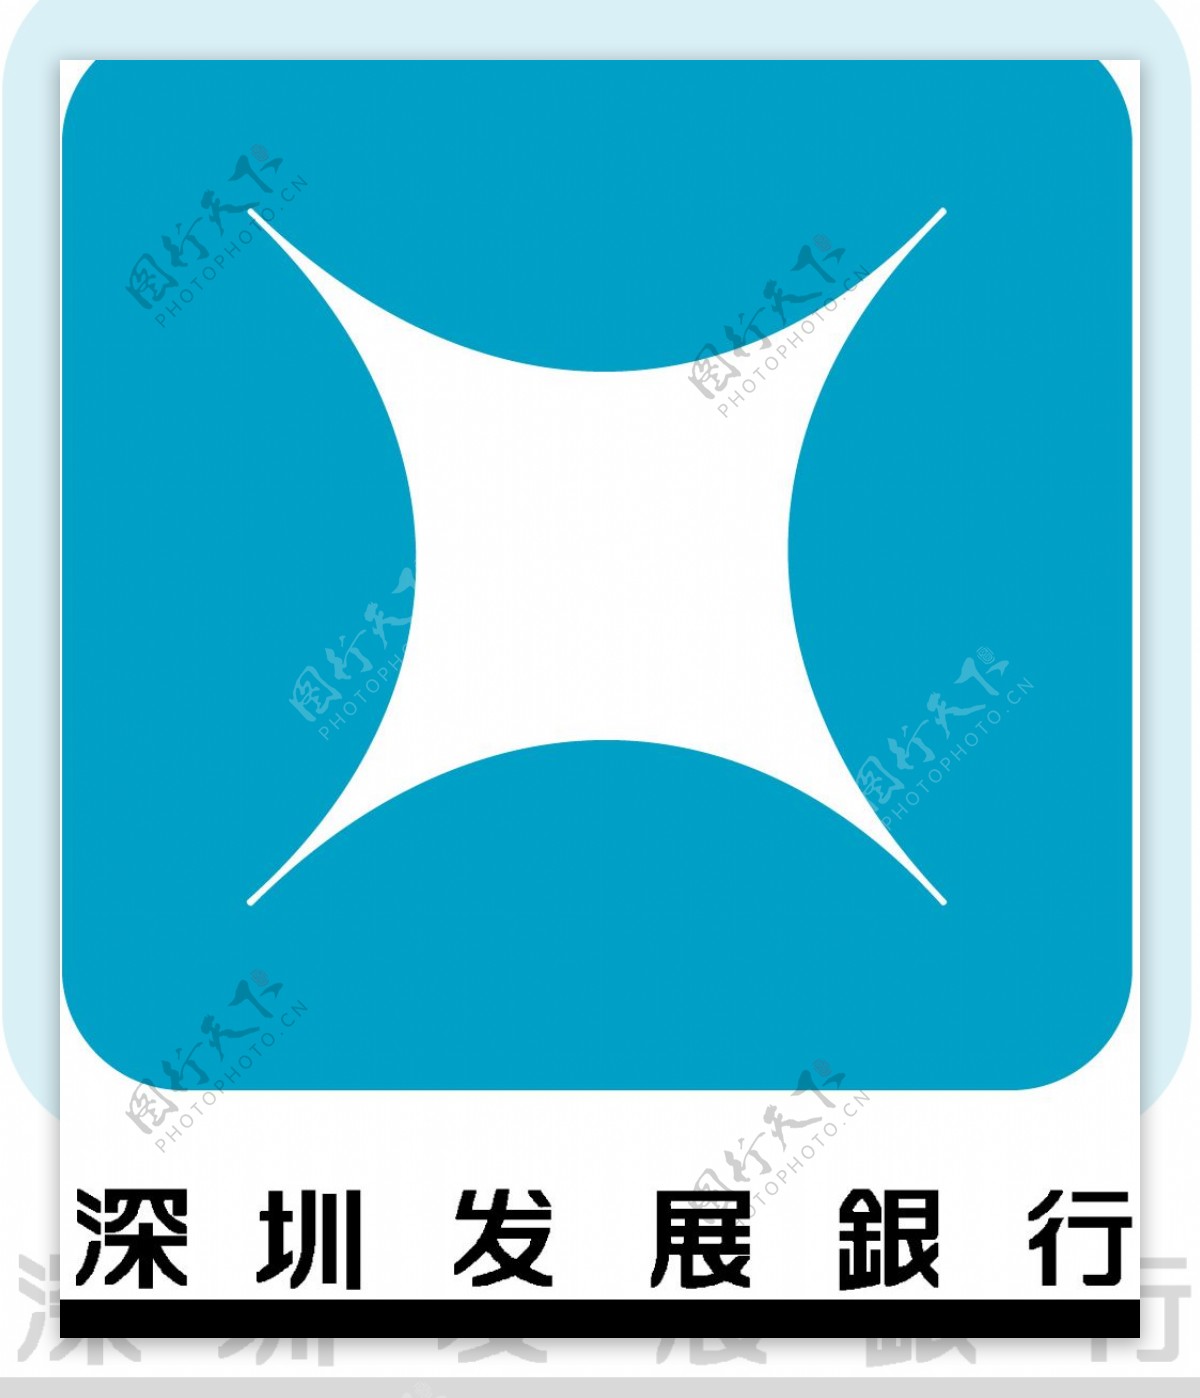 深圳发展银行矢量标志图片